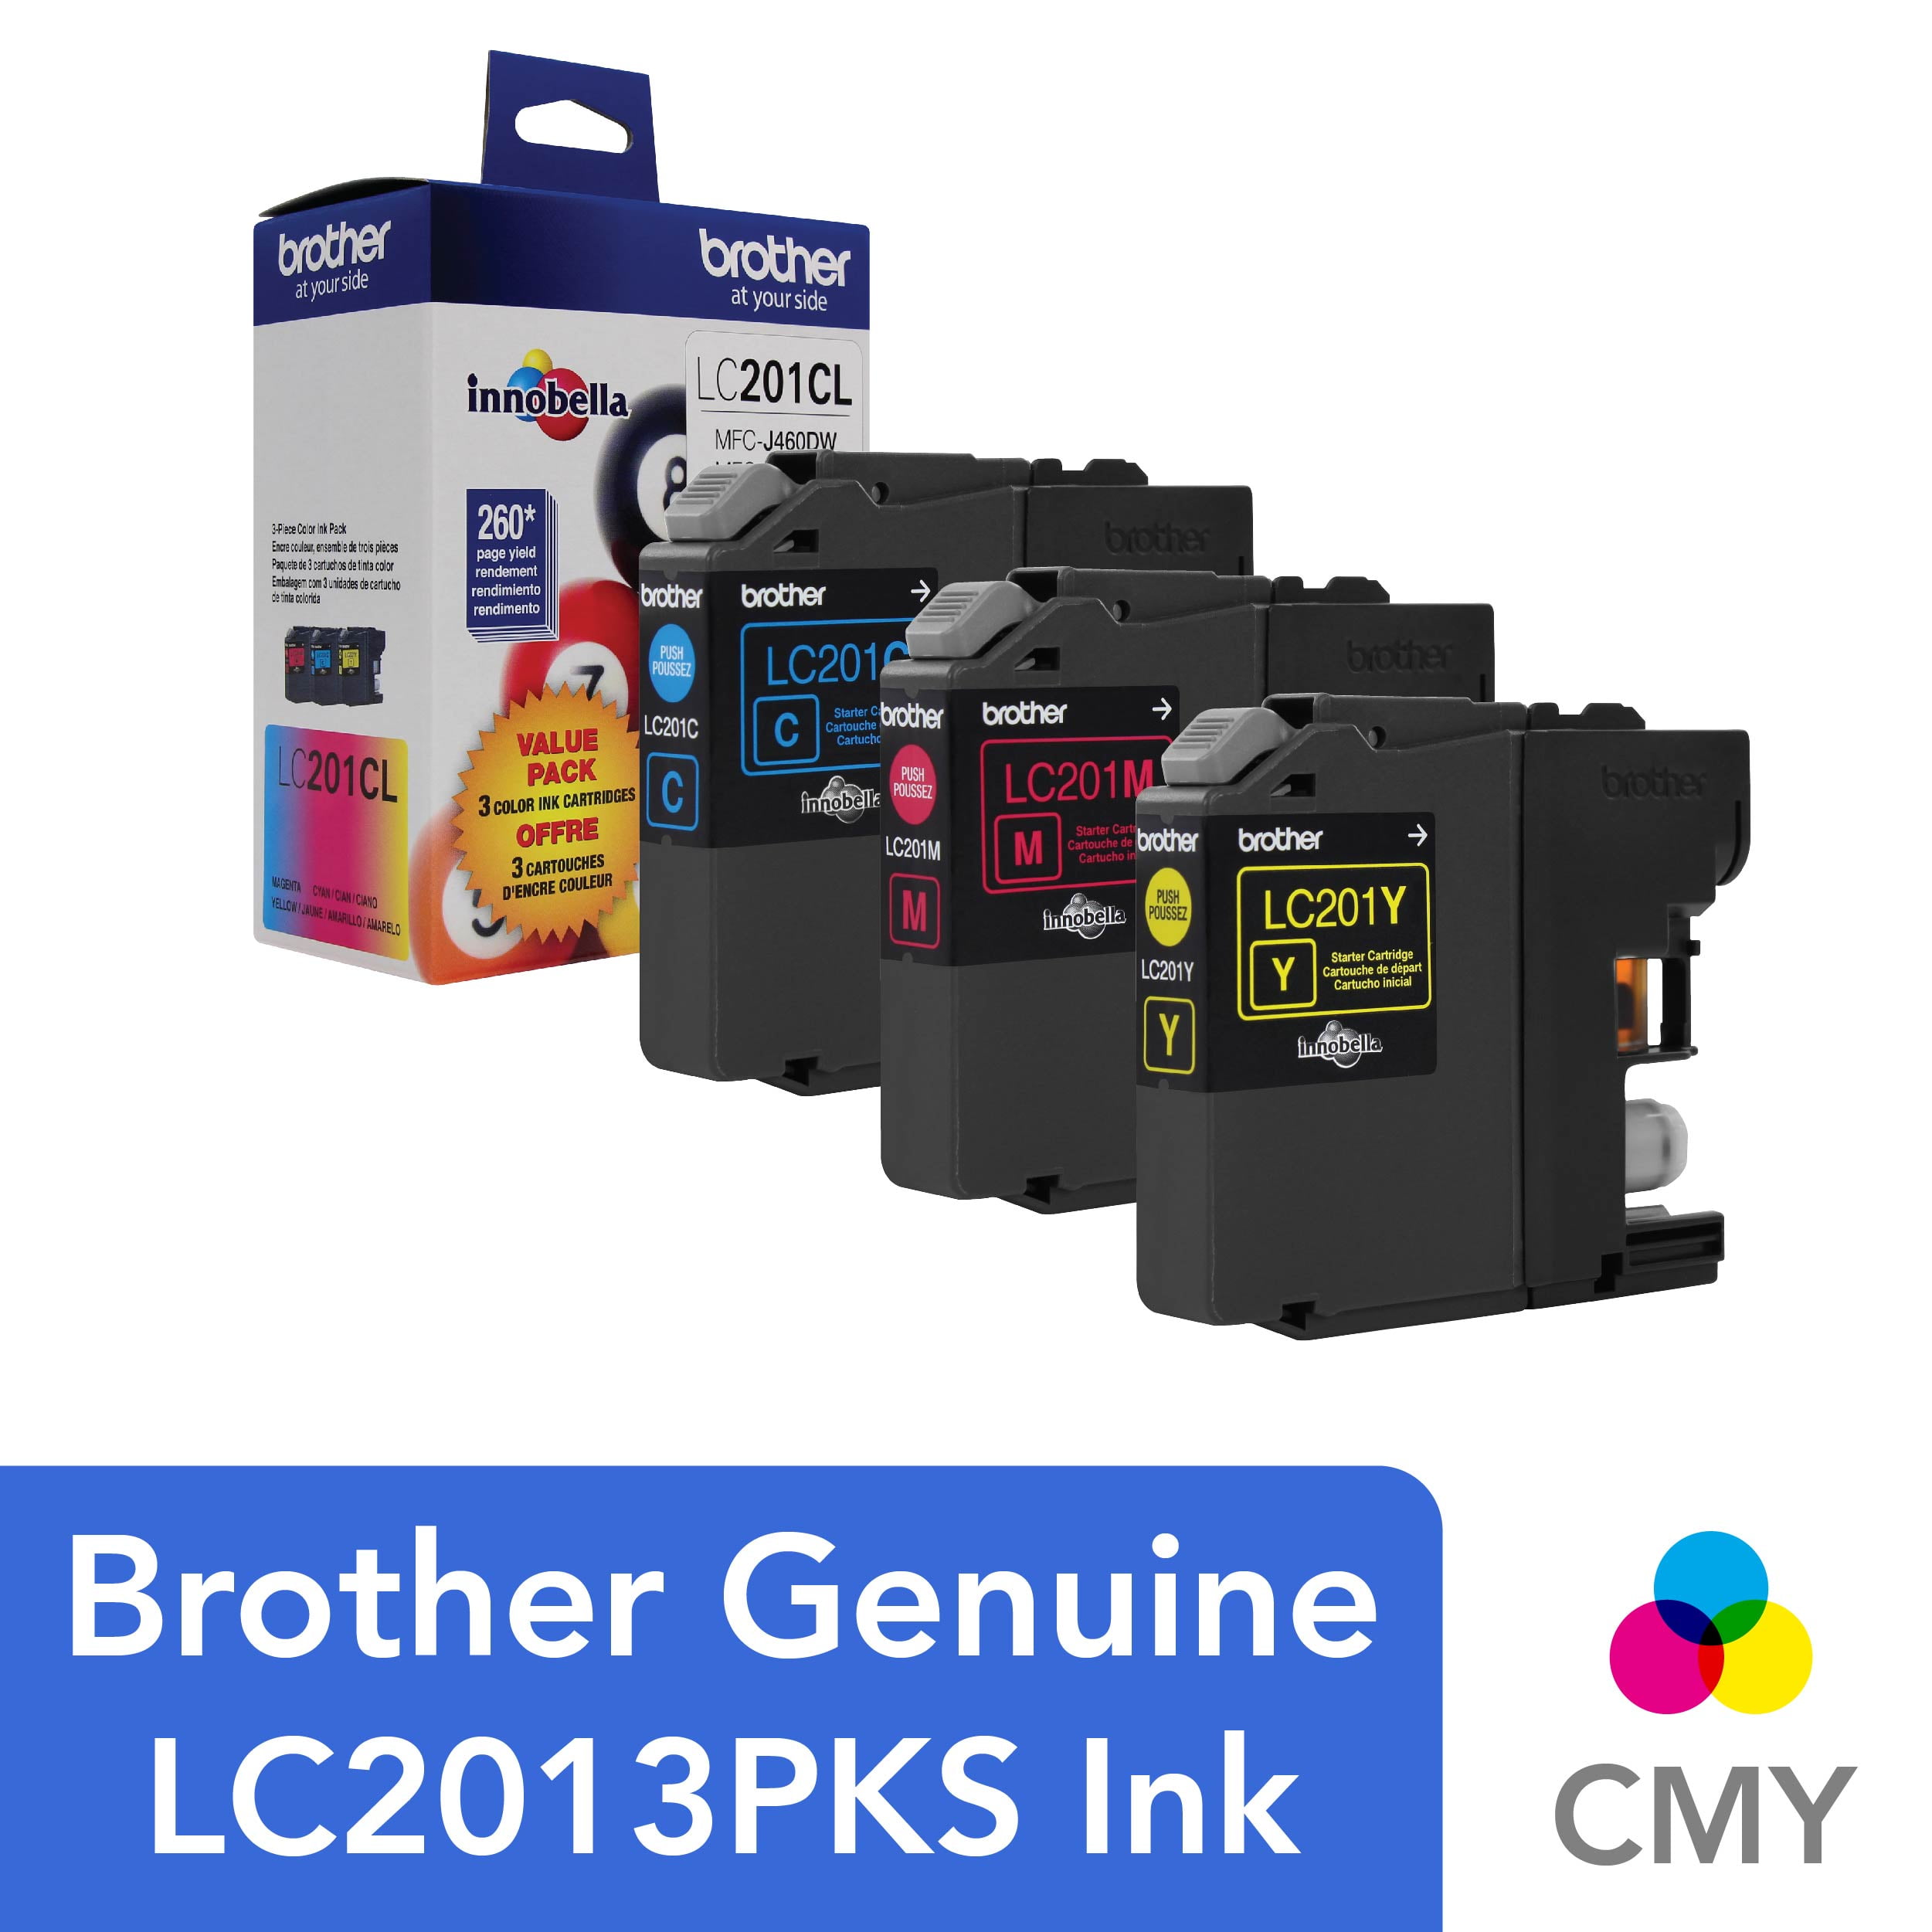 Brother Genuine LC101BK Standard-yield Black Printer Ink Cartridge 